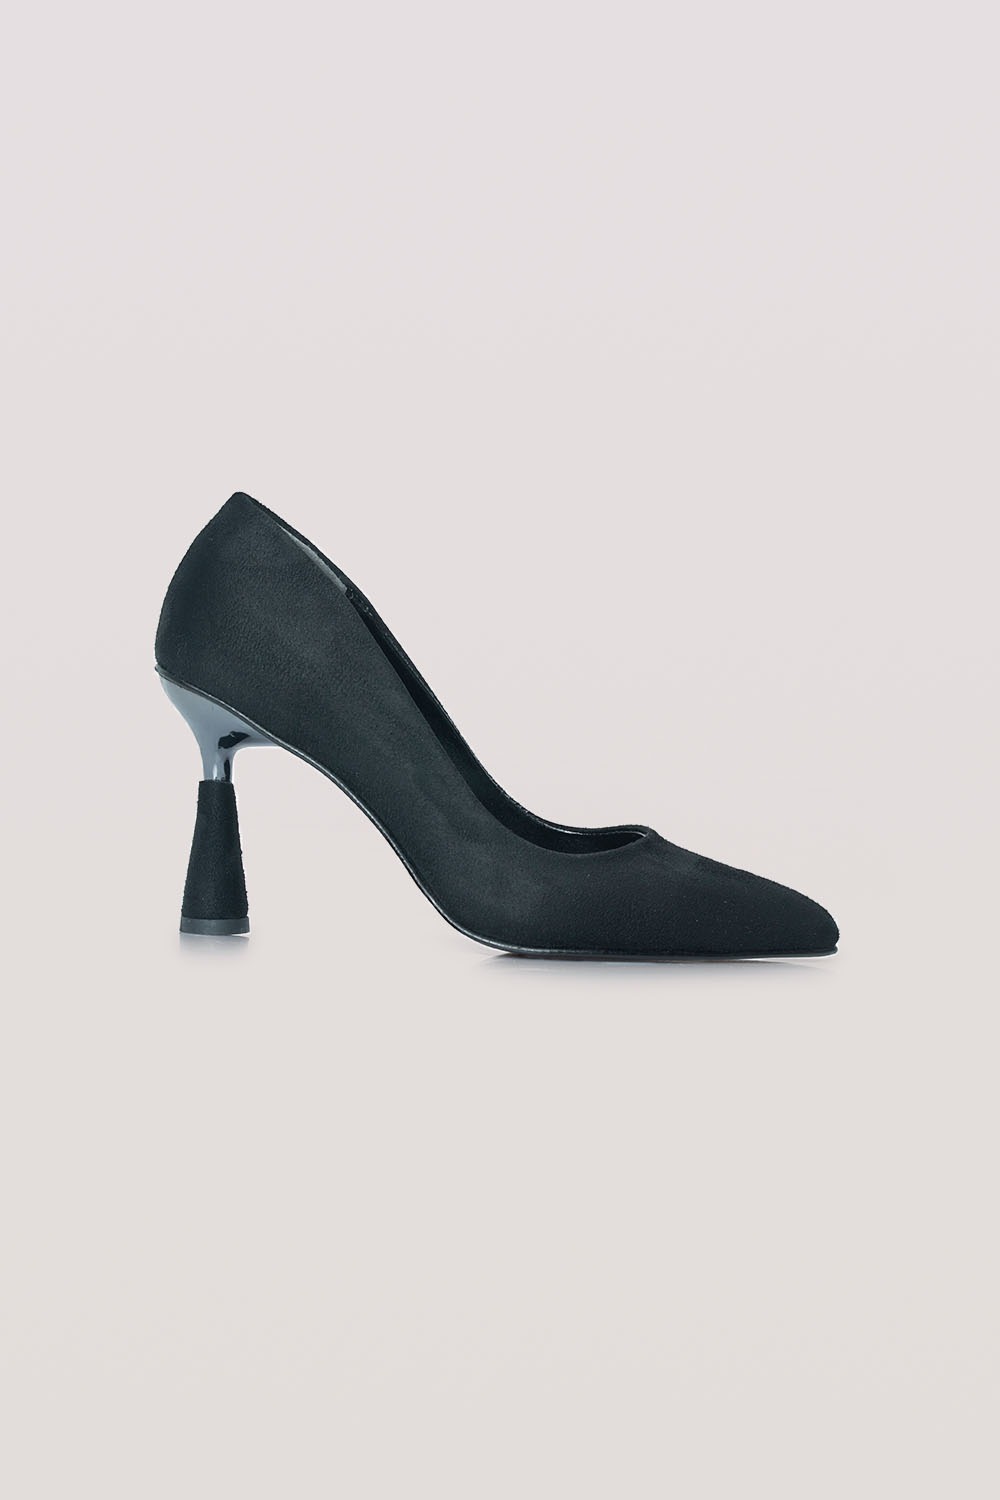 Parlak Topuklu Süet Ayakkabı (Siyah)